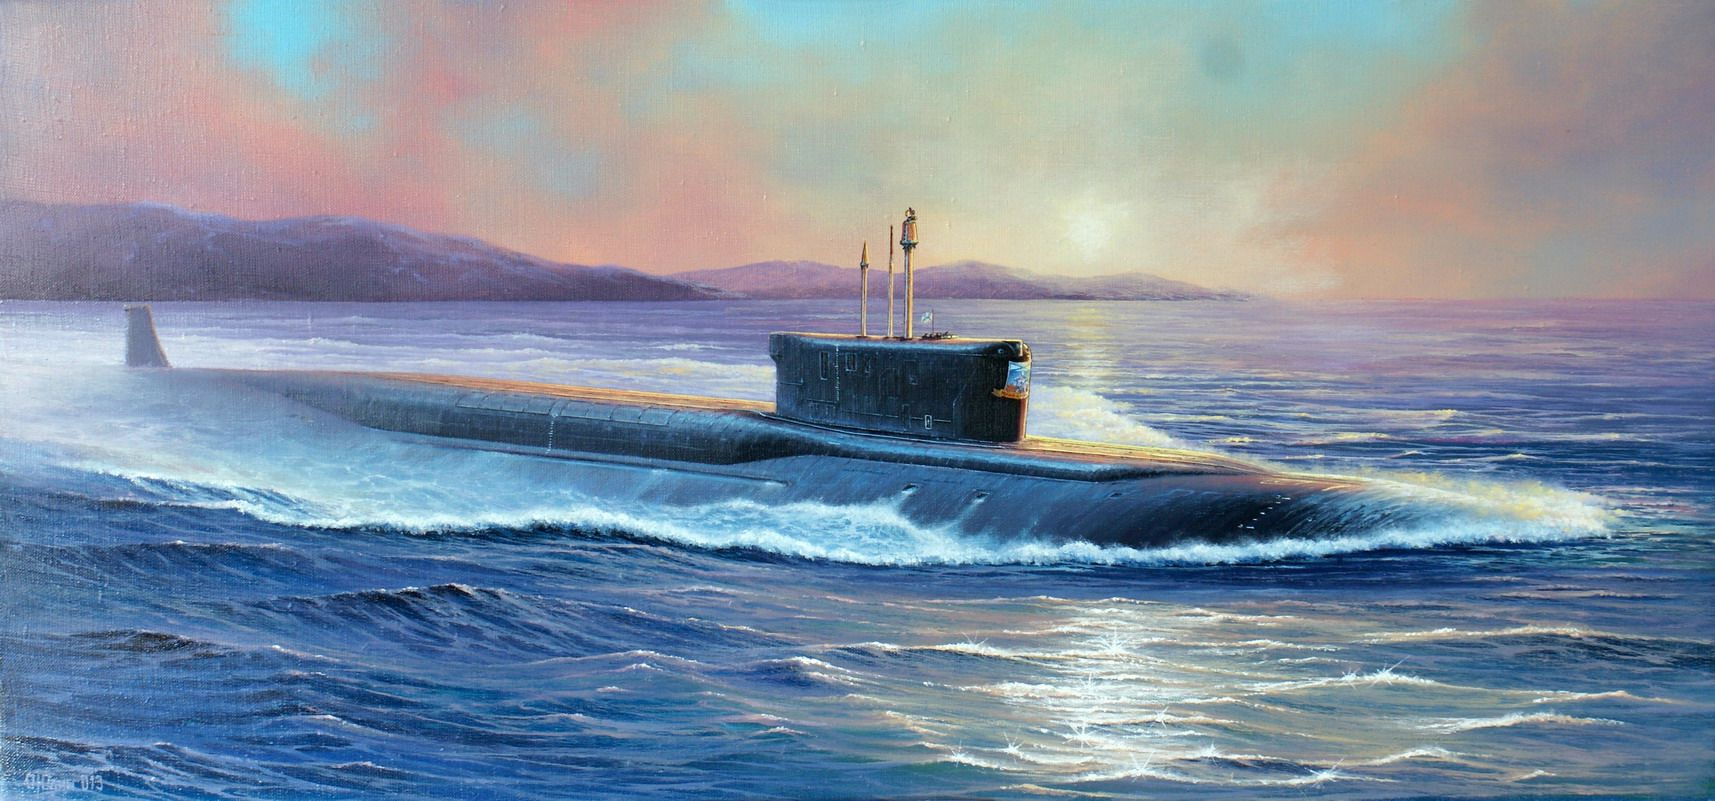 Подводная лодка Юрий Долгорукий рисунок